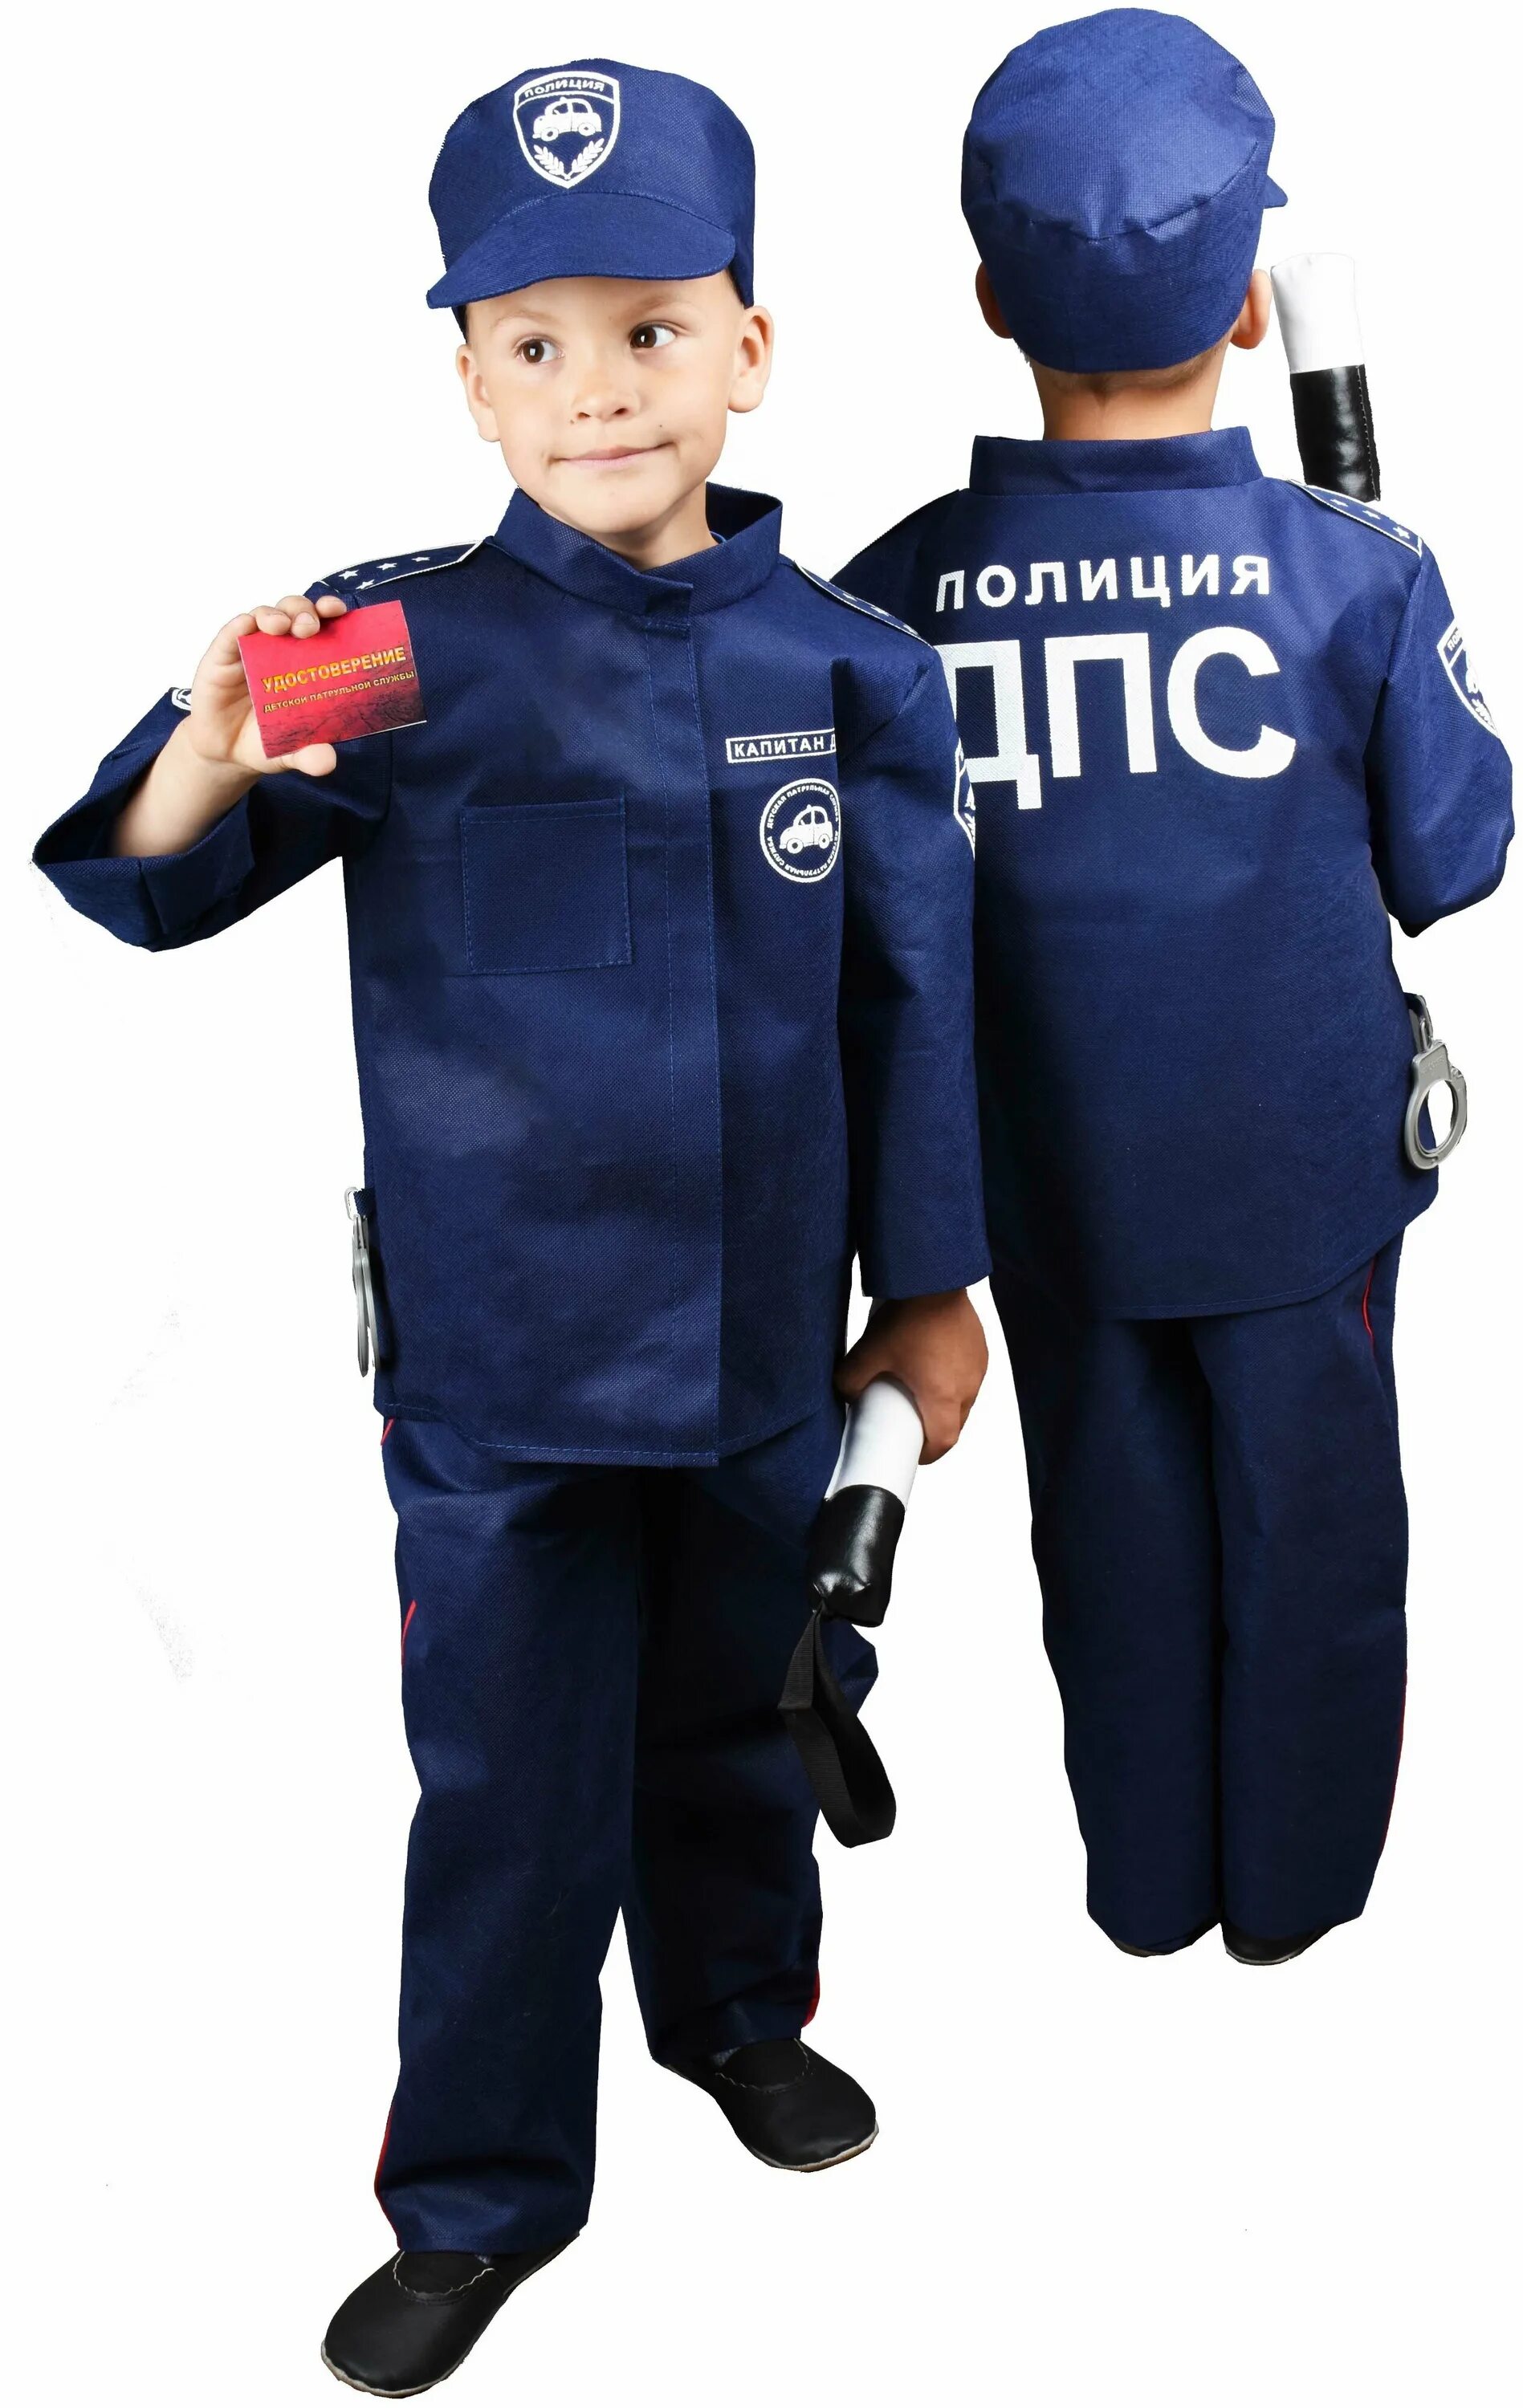 Дпс для детей. Полицейская форма для детей. Детский костюм милиционера. Полицейский набор для детей. Костюм ДПС детский.